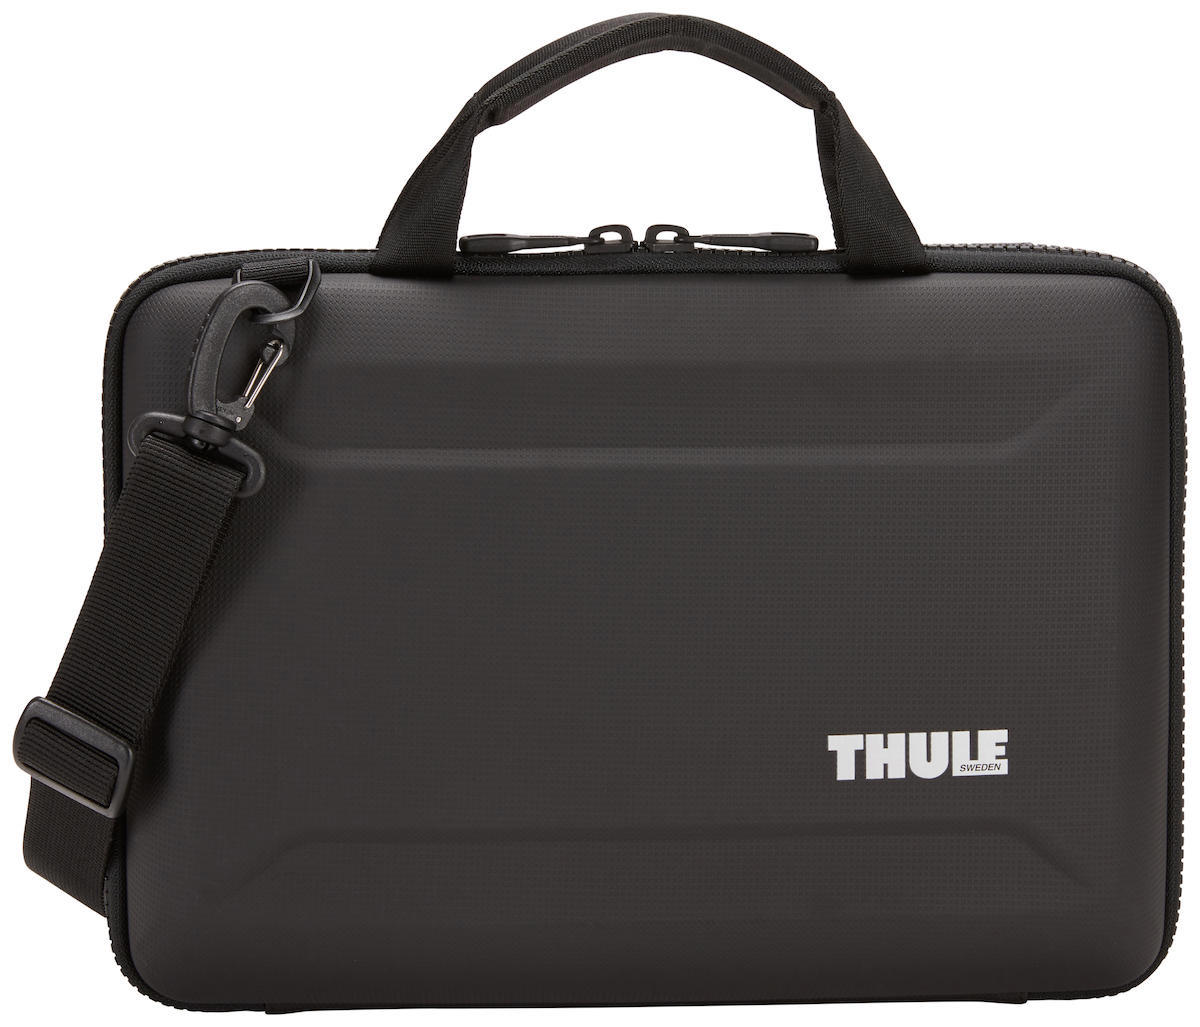 Thule 16 inç Tekstil Su Geçirmez Laptop Postacı Çantası Siyah